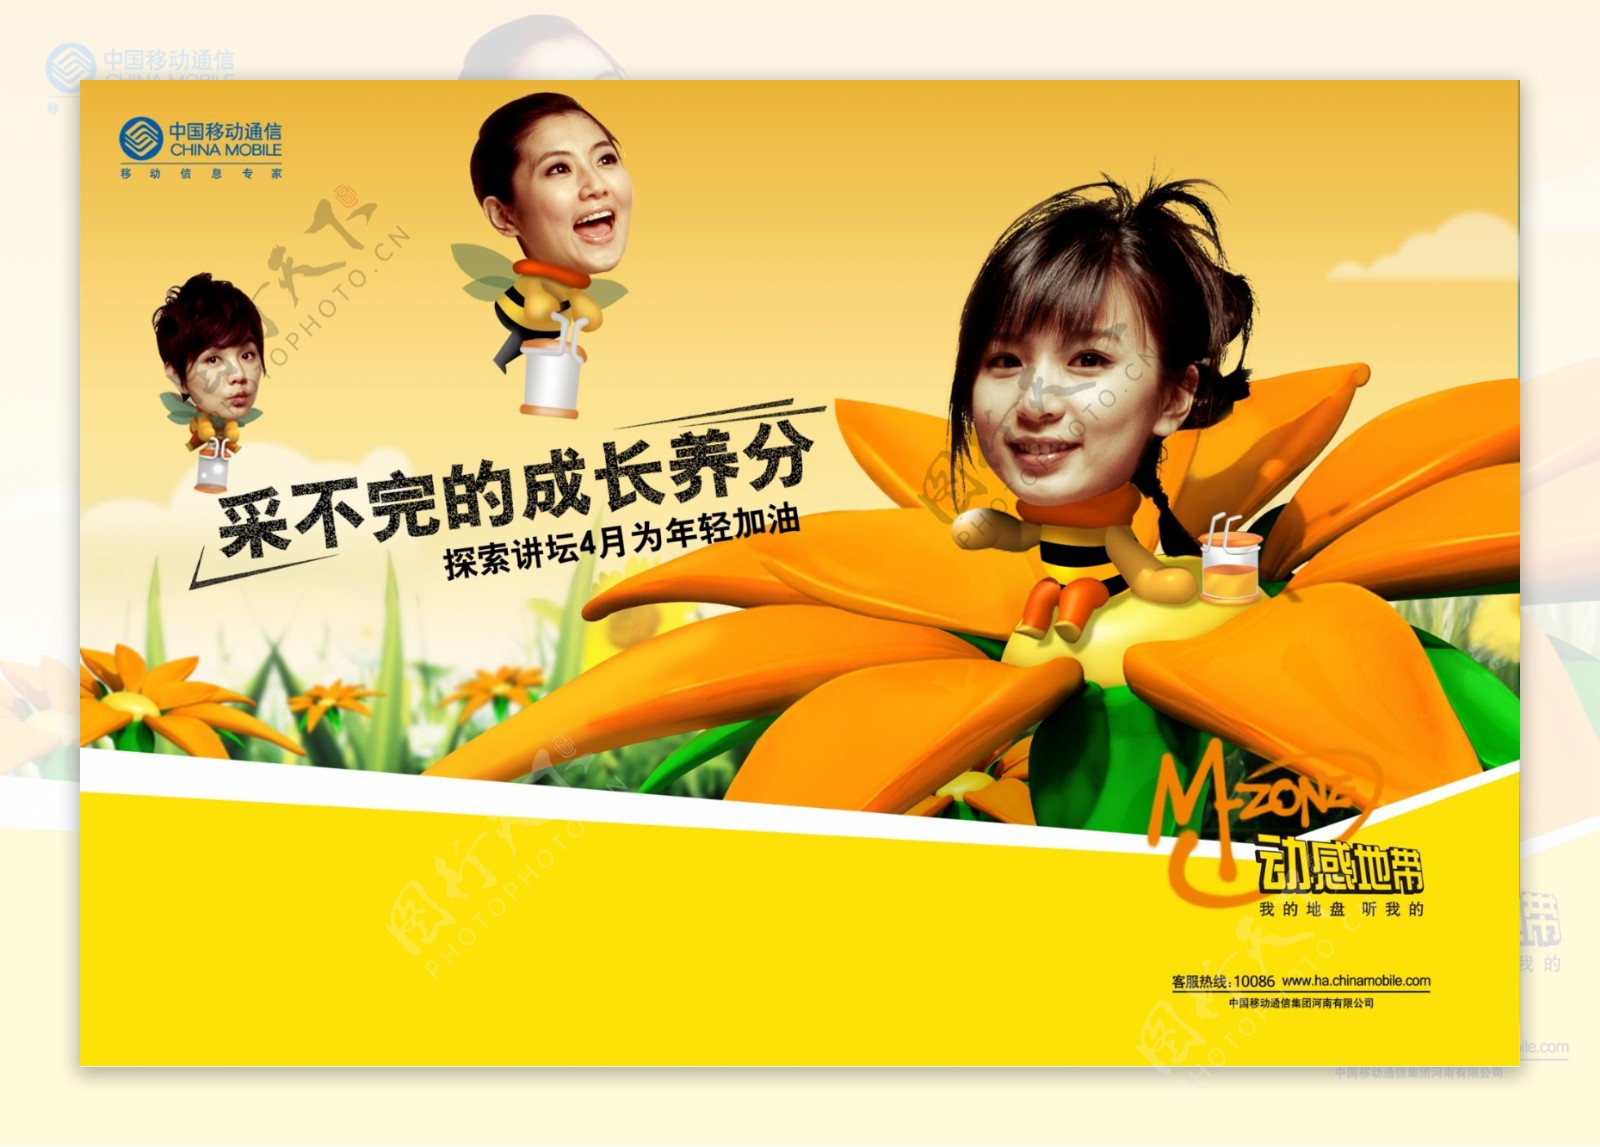 龙腾广告平面广告PSD分层素材源文件中国电信移动动感地带明星SHE卡通